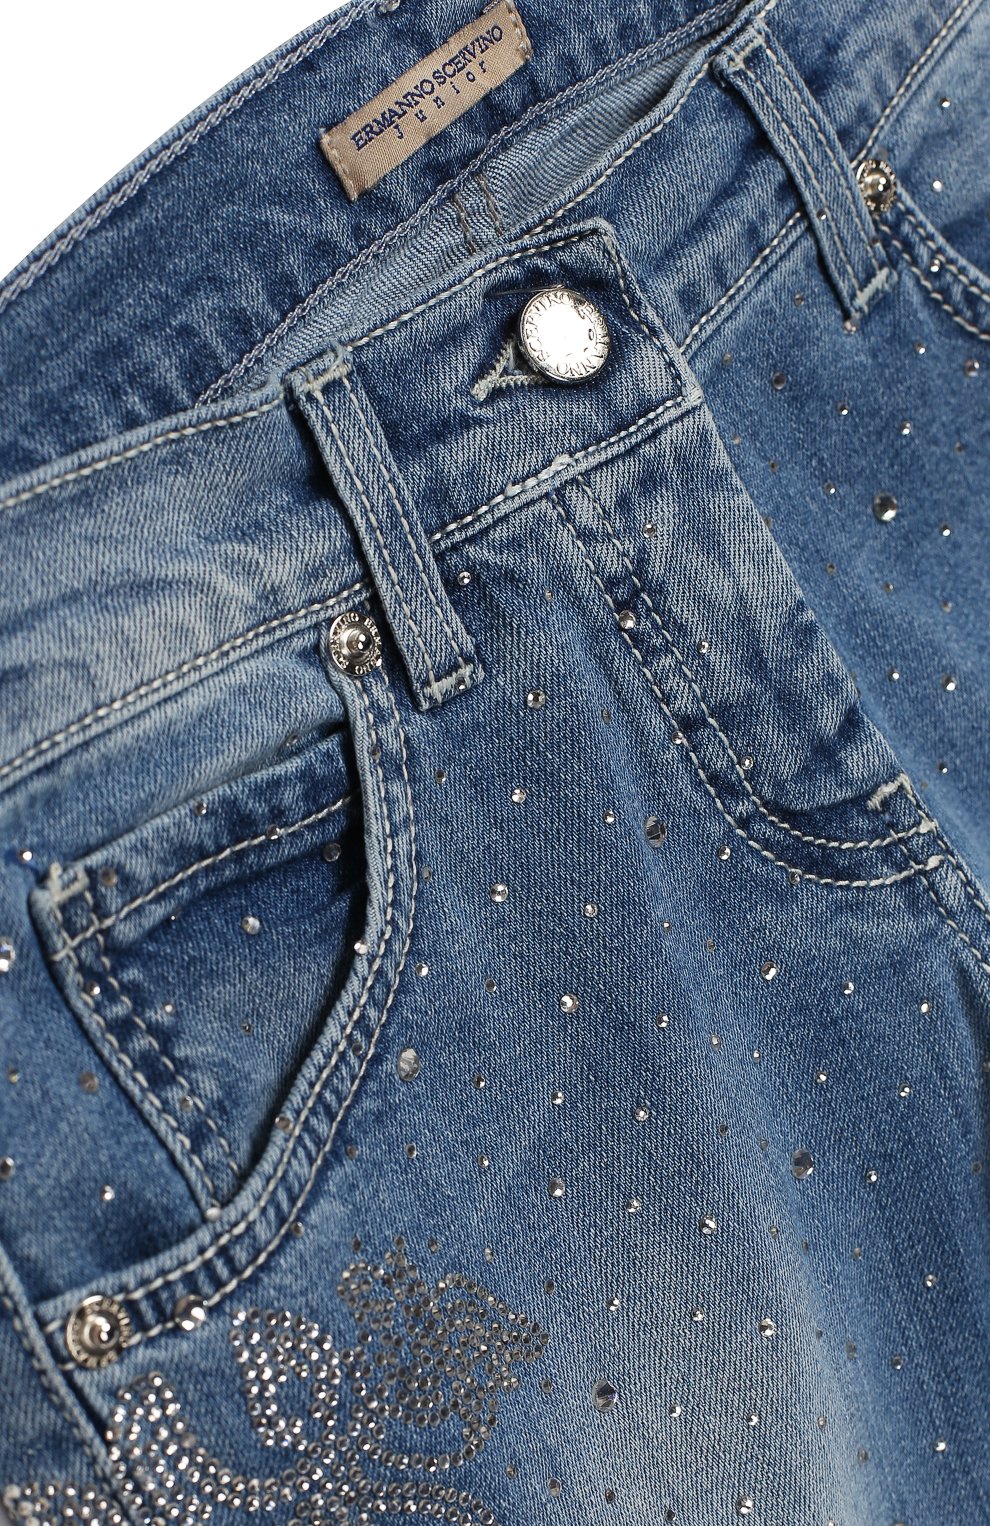 Женские джинсы с бисером, кристалами, камнями или стразами